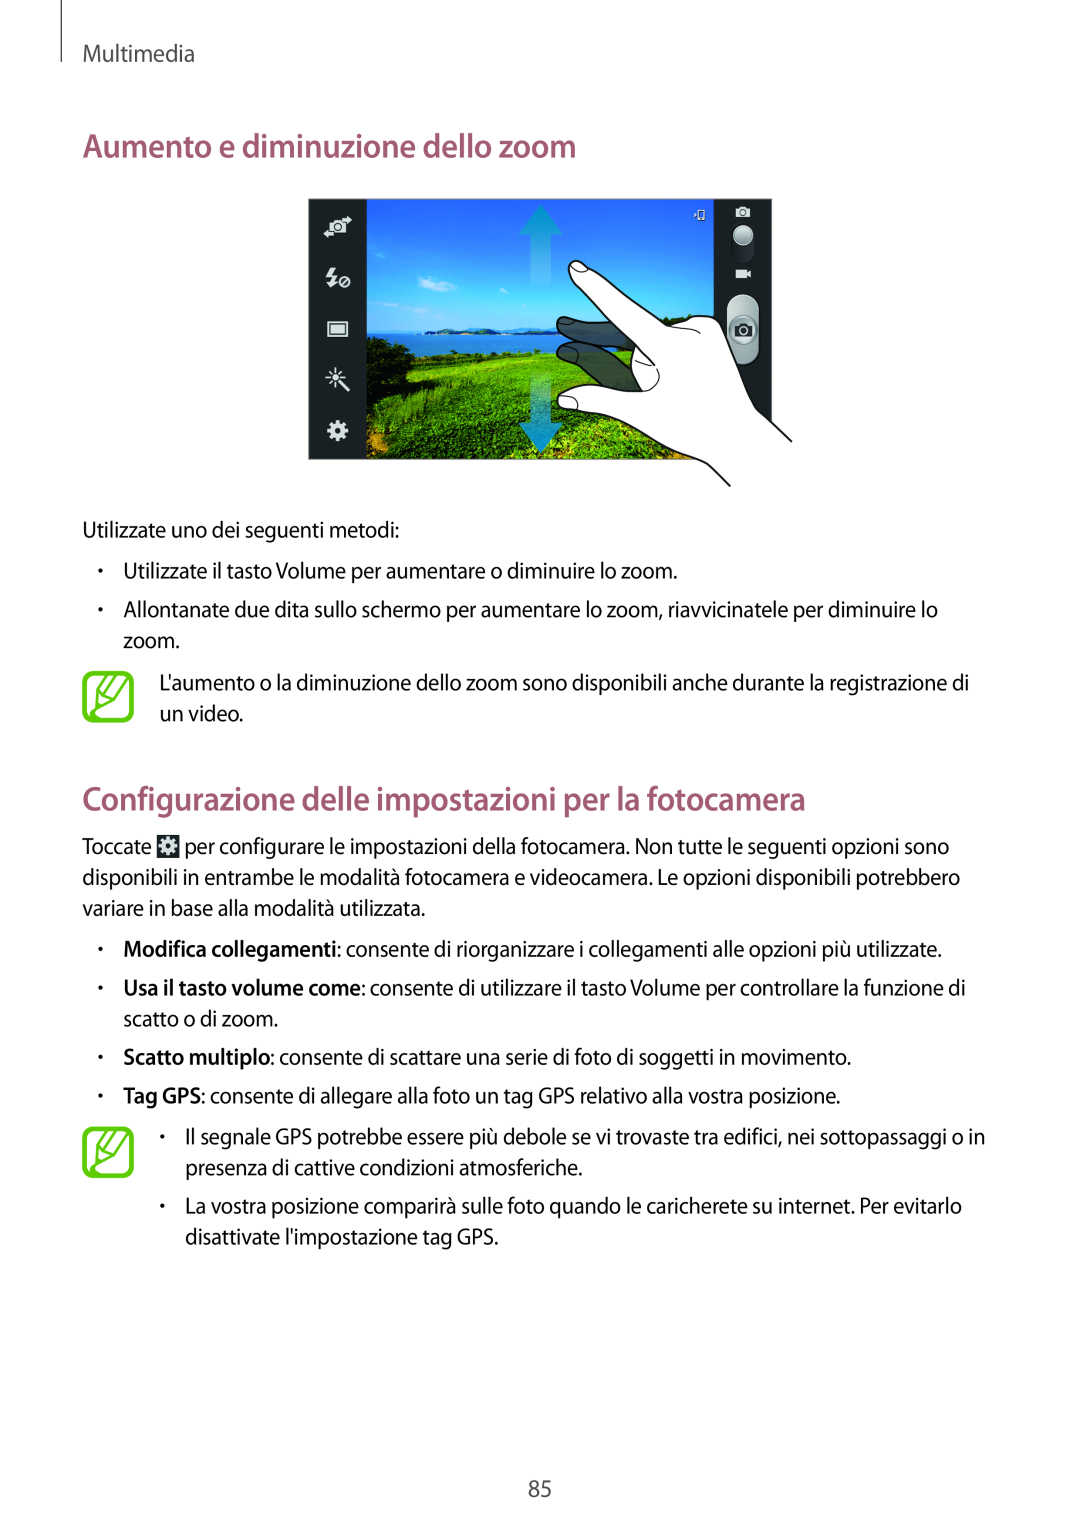 Samsung GT-N7100VSDWIN Aumento e diminuzione dello zoom, Configurazione delle impostazioni per la fotocamera, Multimedia 